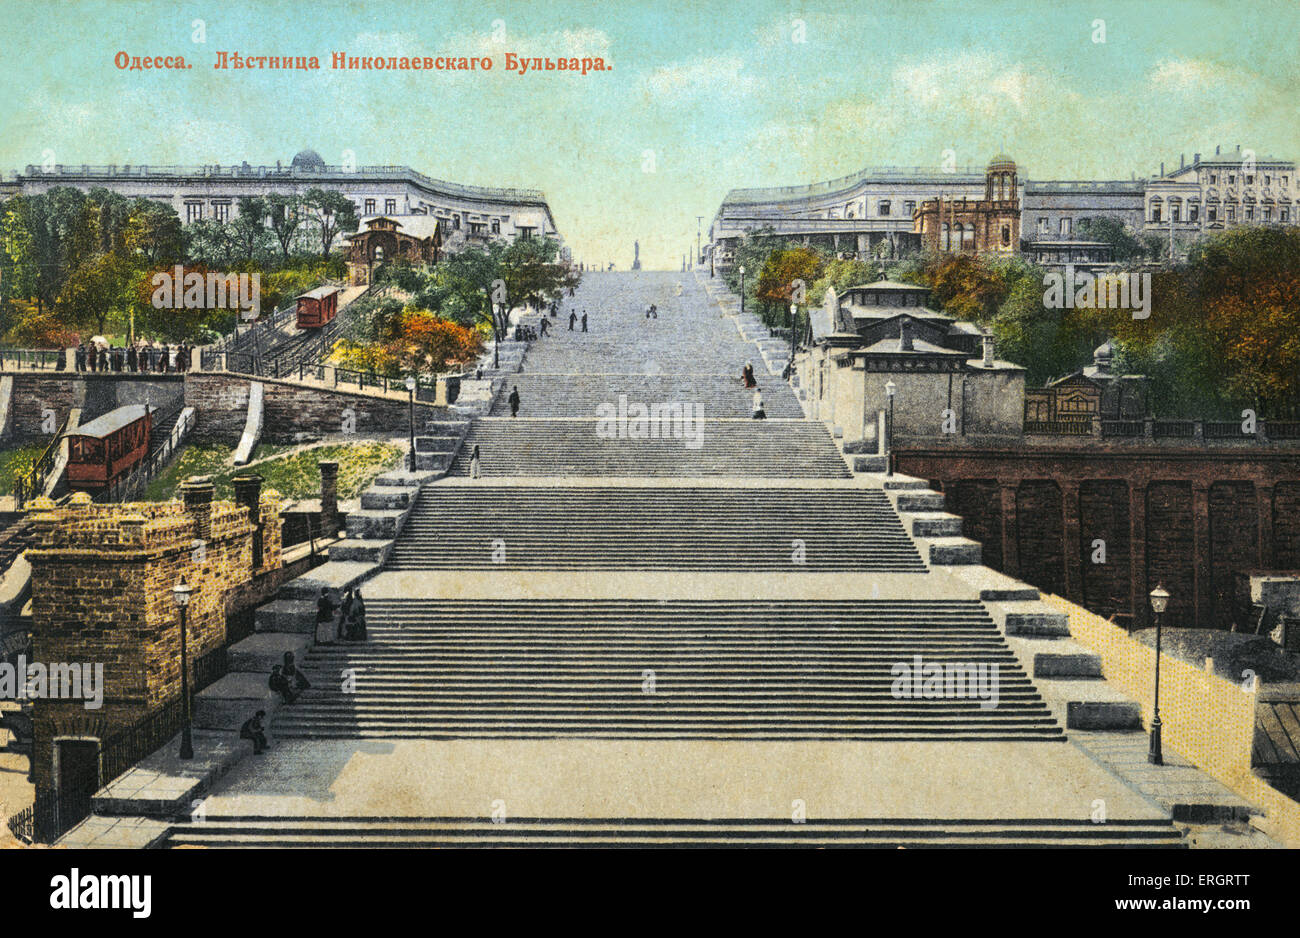 Les marches d'Odessa, Ukraine immortalisé par Sergei Eisenstein film le cuirassé Potemkine. Carte postale couleur russe. Banque D'Images